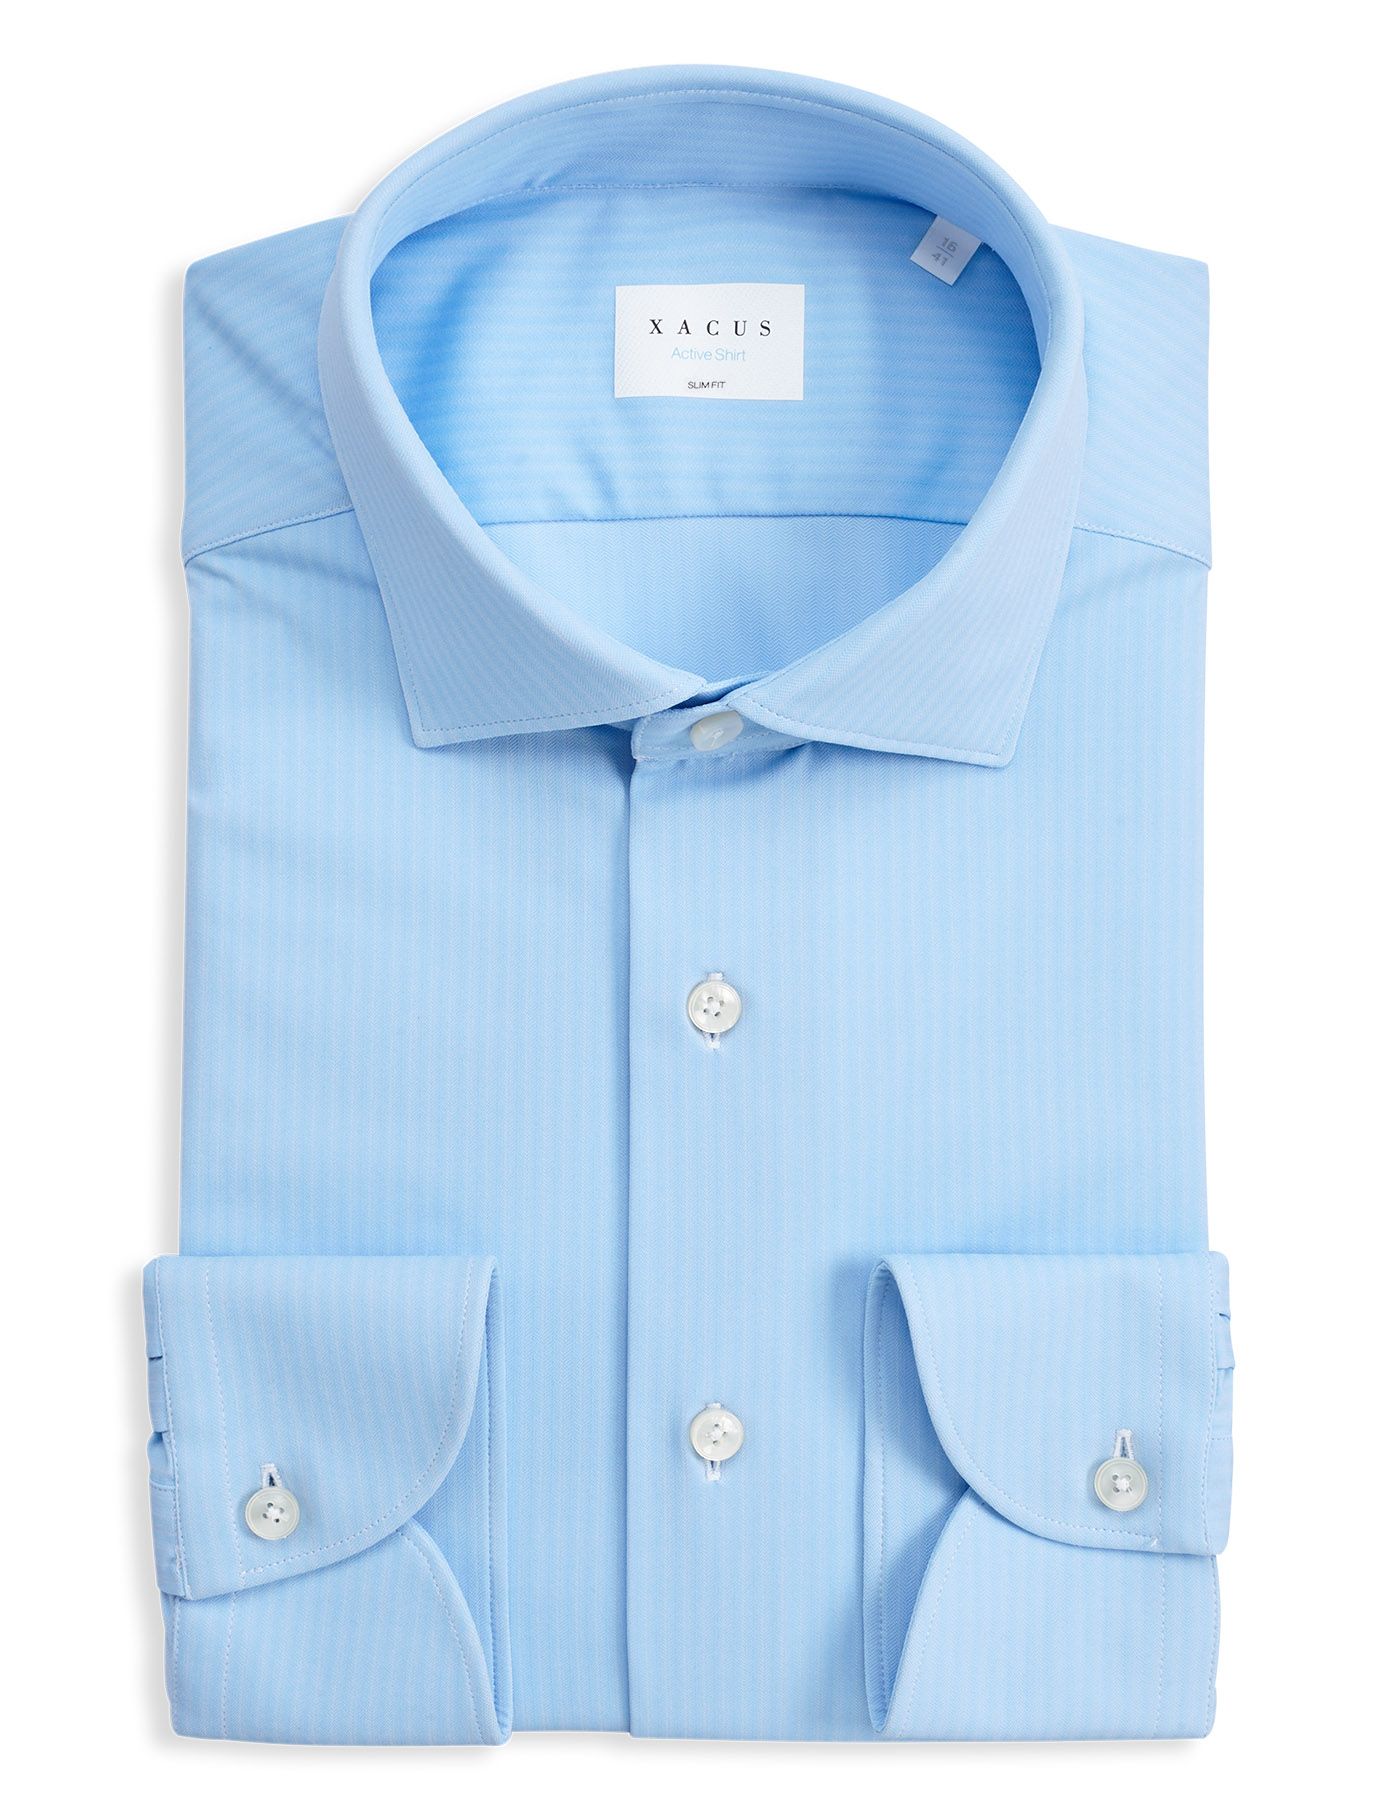 Homme Vêtements Chemises Chemises casual et boutonnées Chemise Xacus pour homme en coloris Blanc 